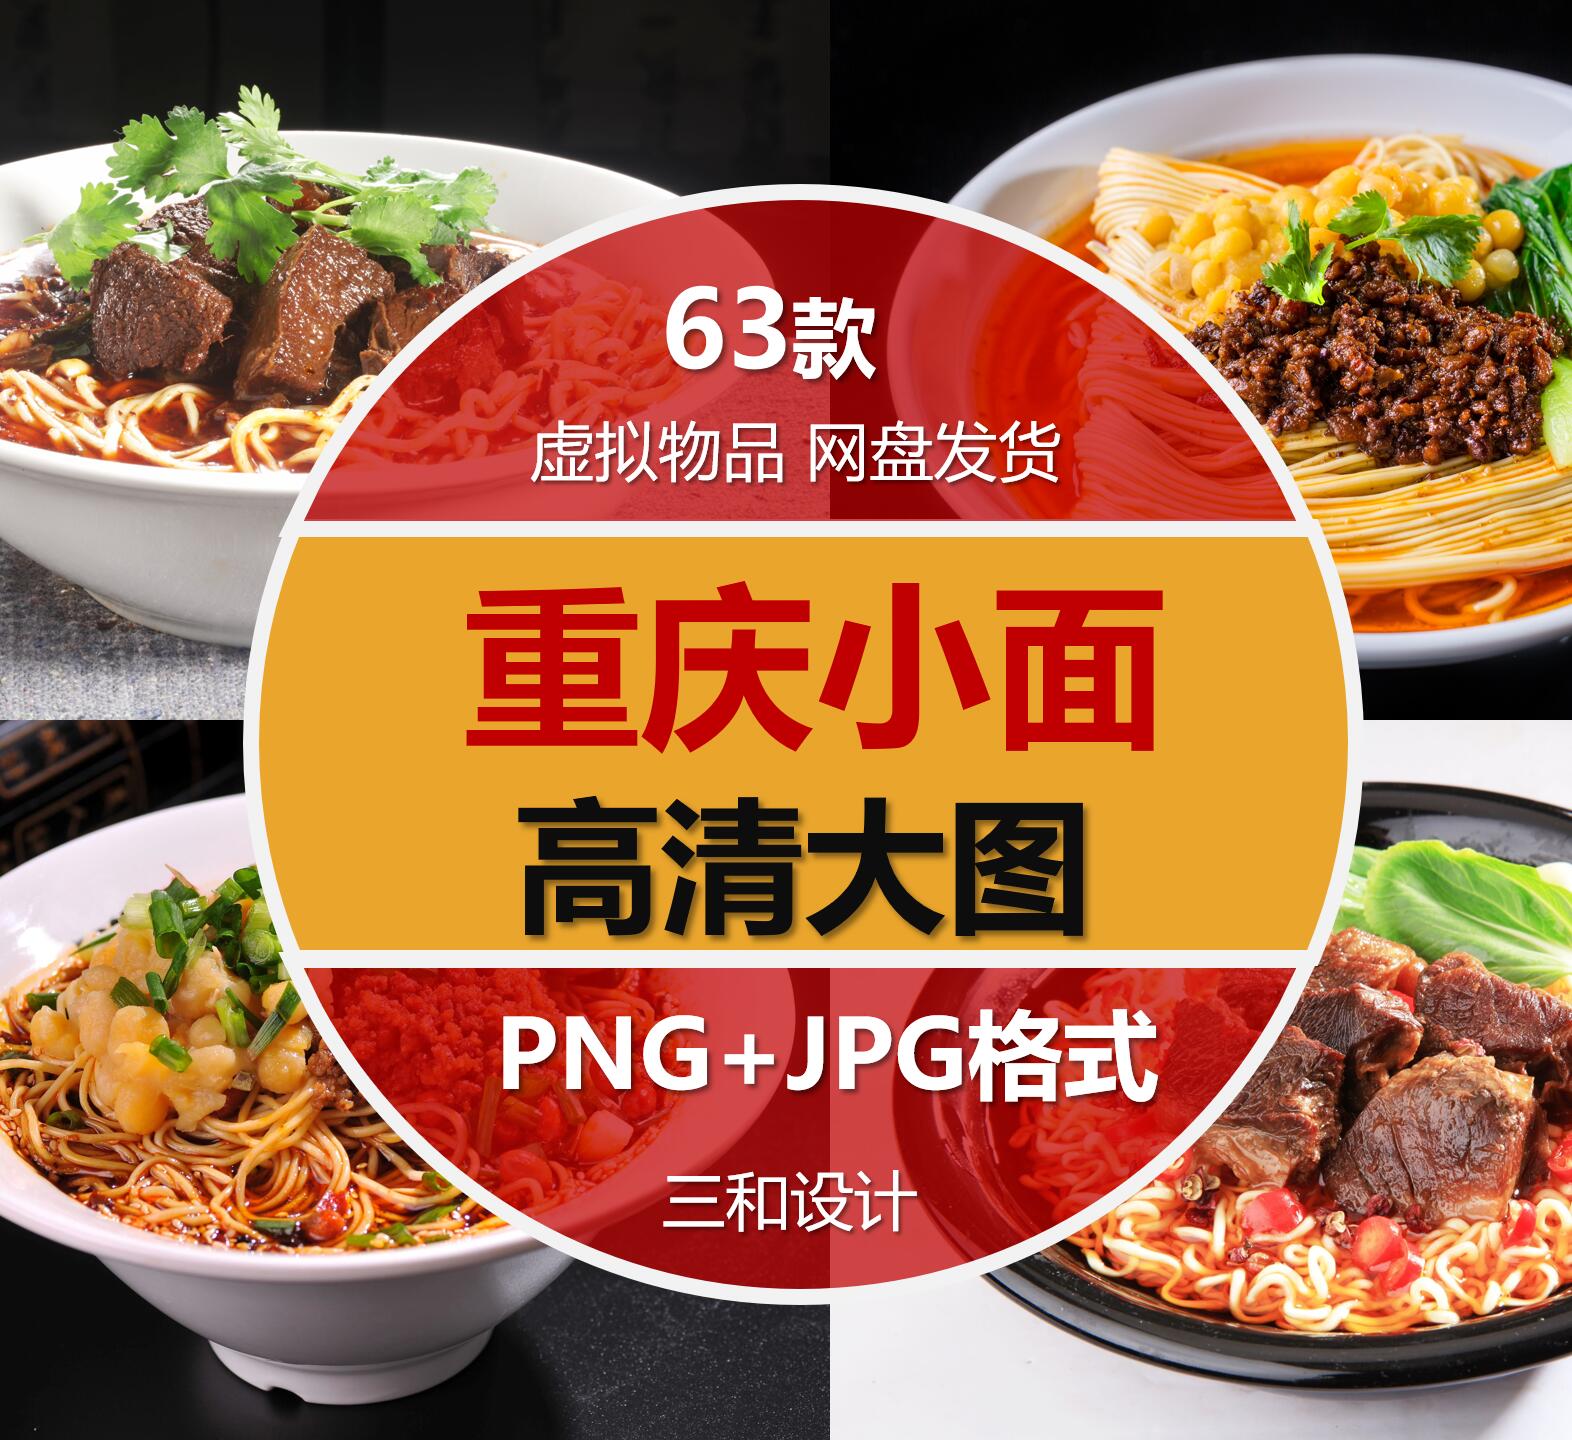 重庆小面豌杂面美团外卖菜单海报宣传单设计素材高清JPG图片